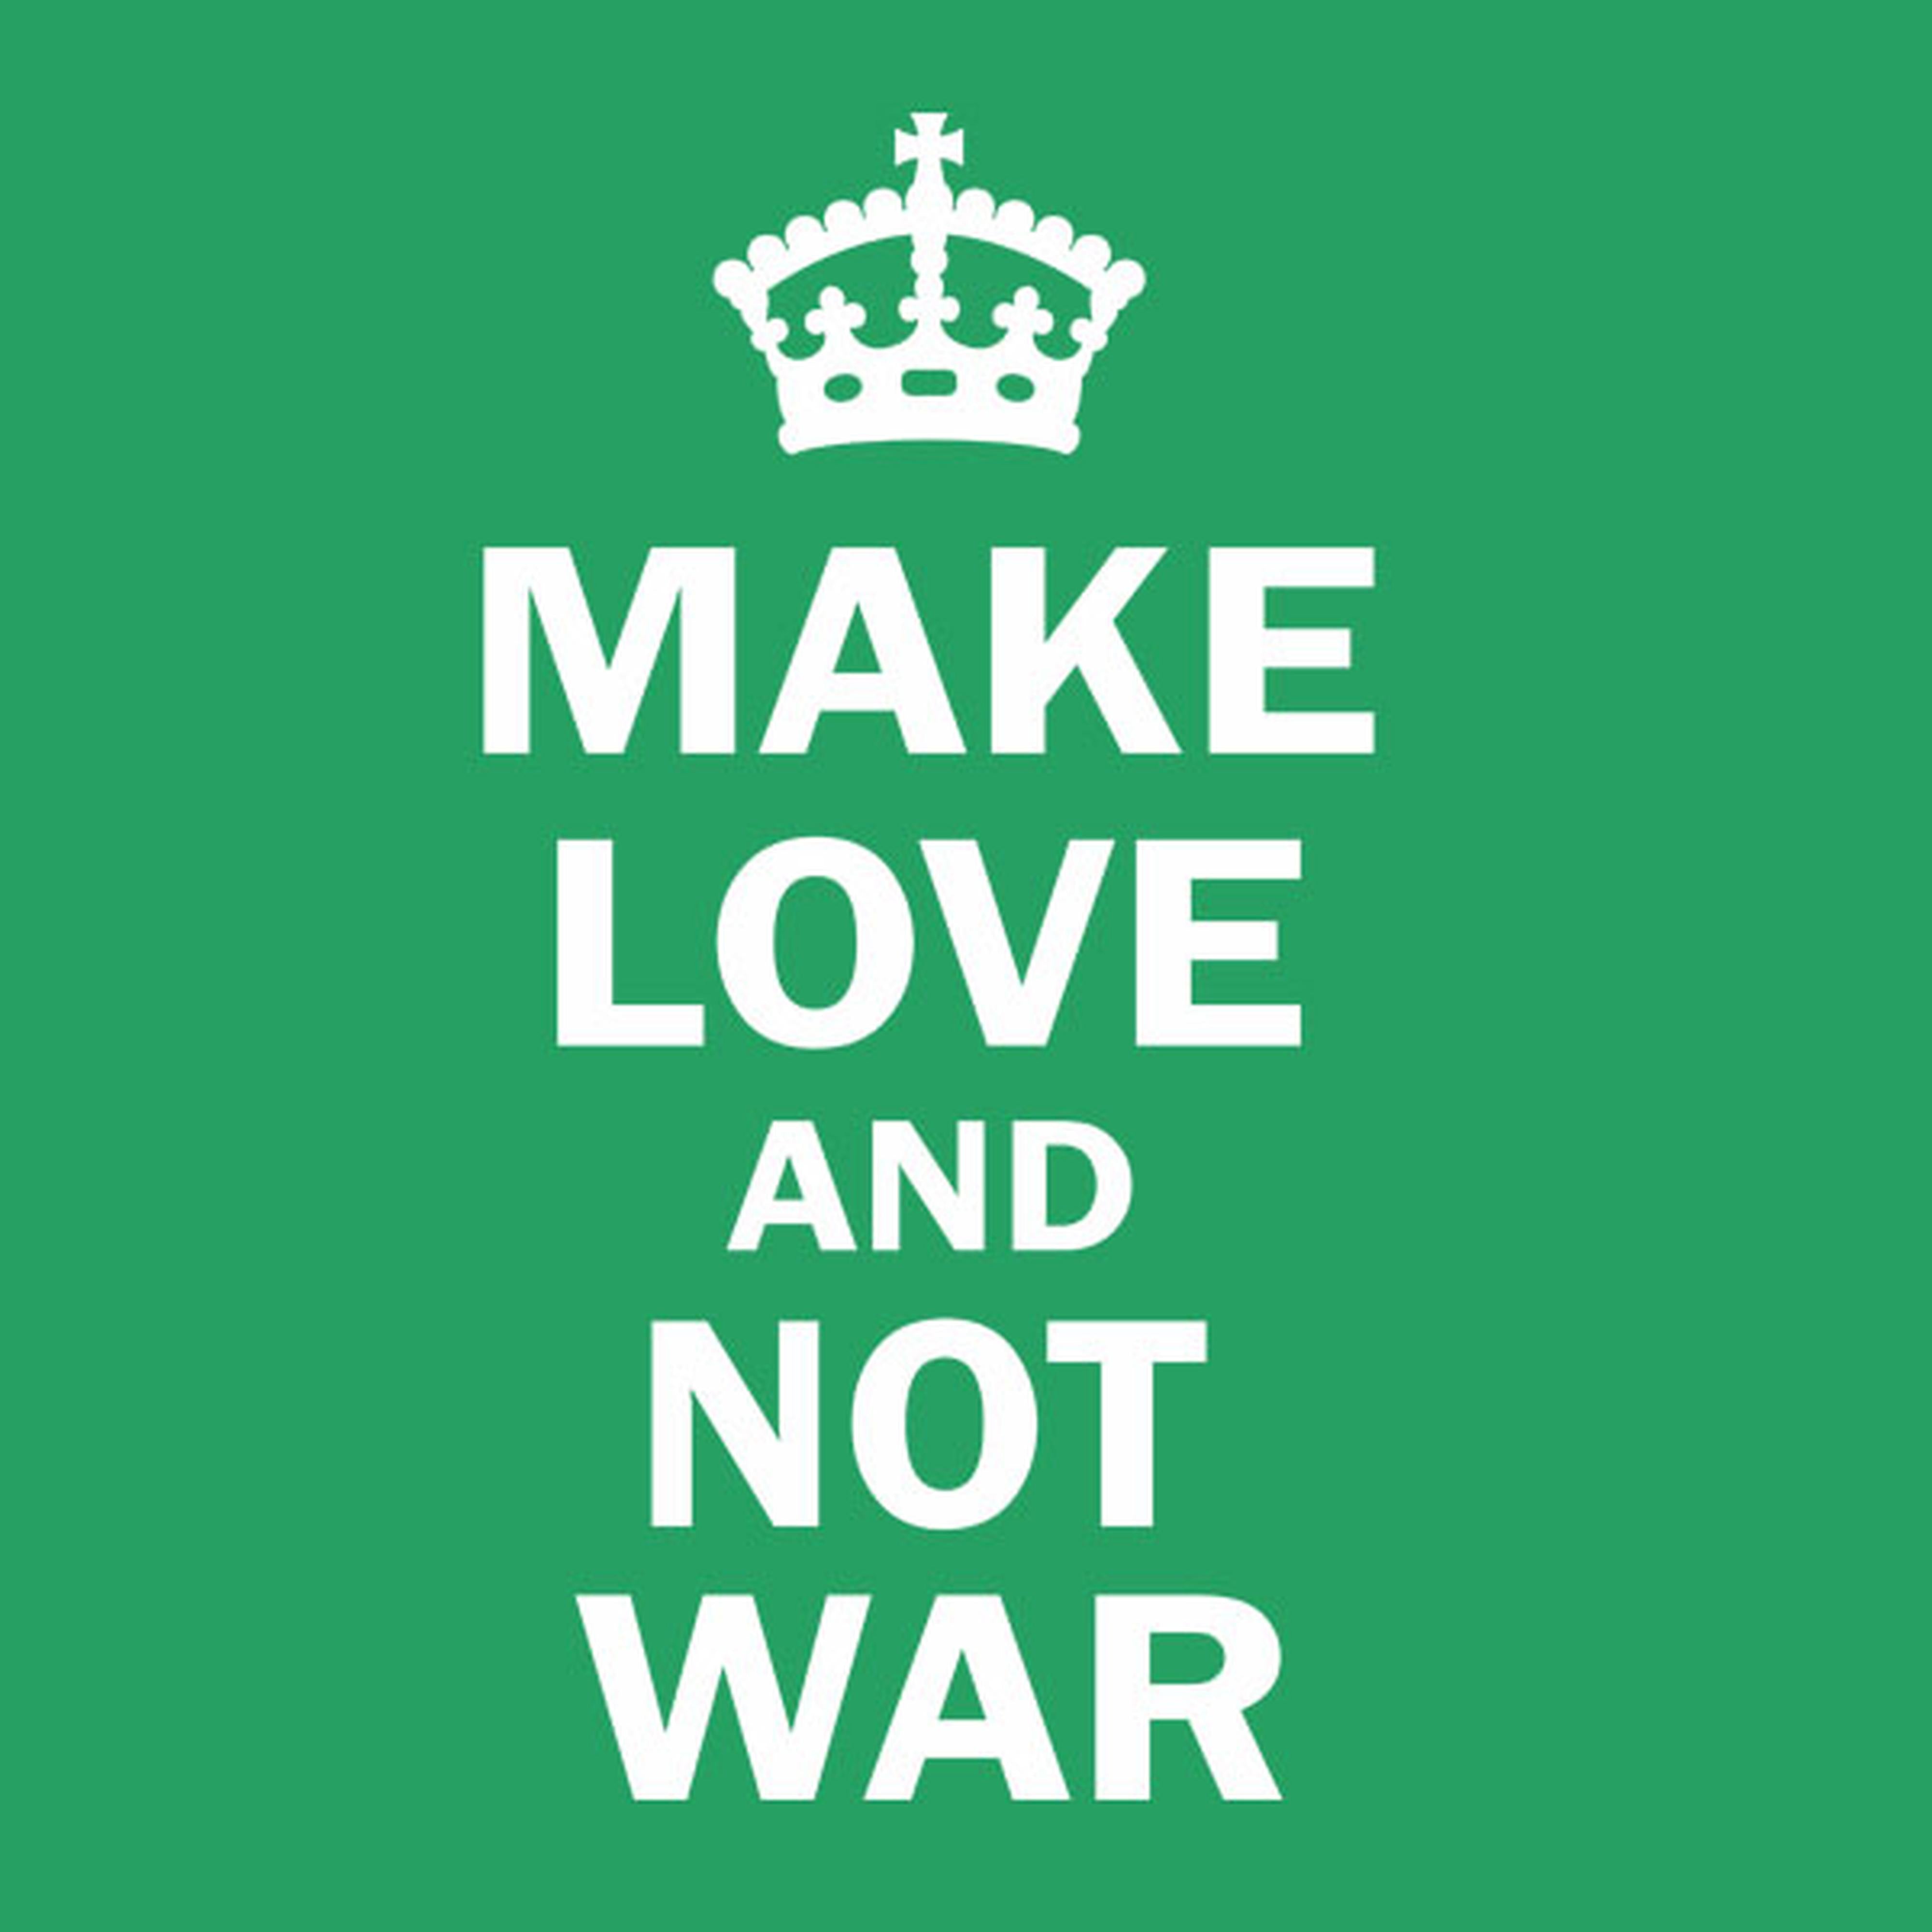 Make love and not war - T-shirt